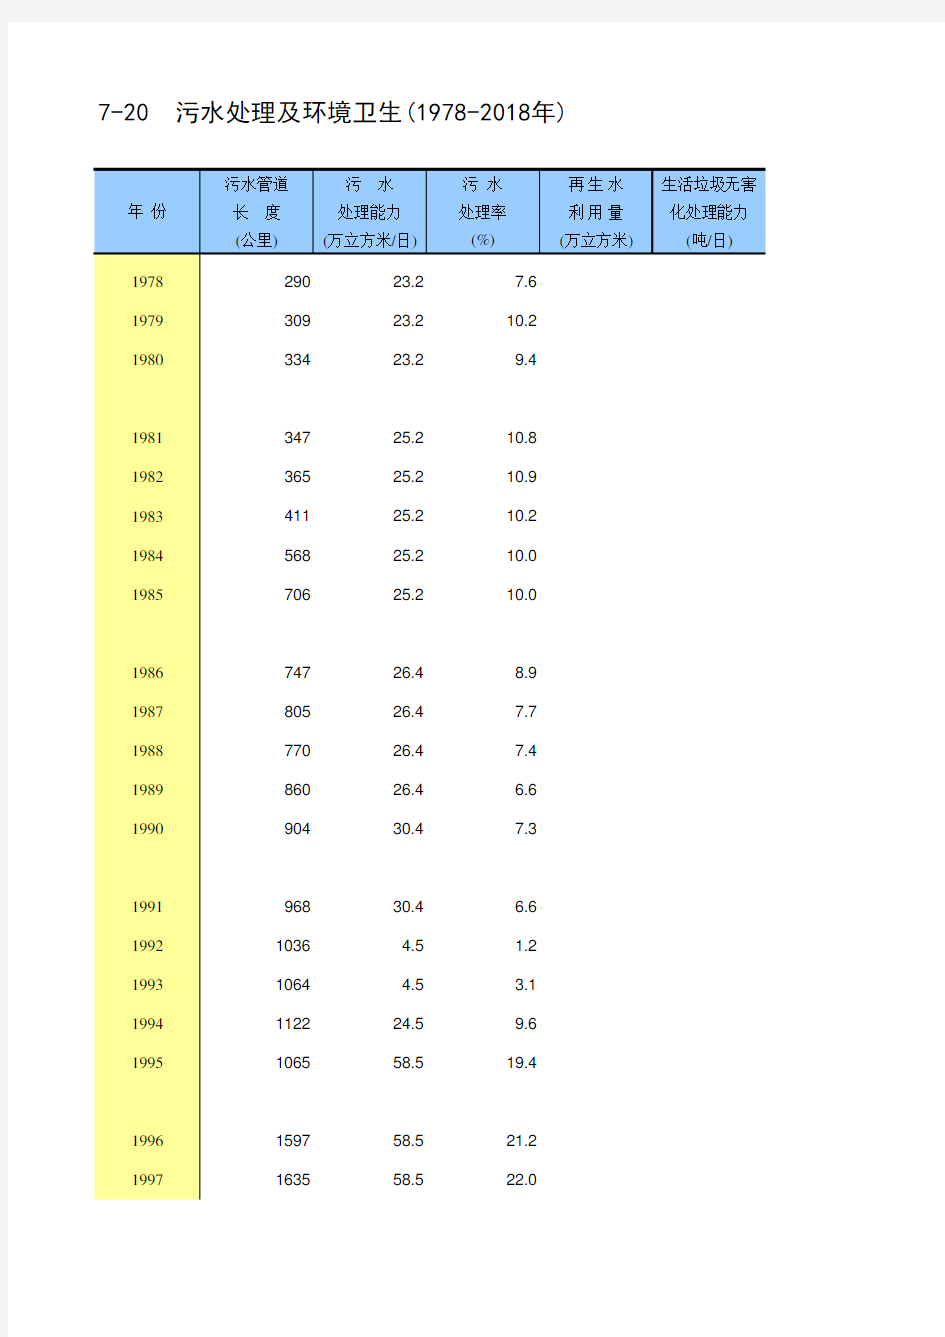 北京市统计年鉴宏观经济指标数据处理：7-20 污水管线长度垃圾处理能力等及环境卫生(1978-2018年)